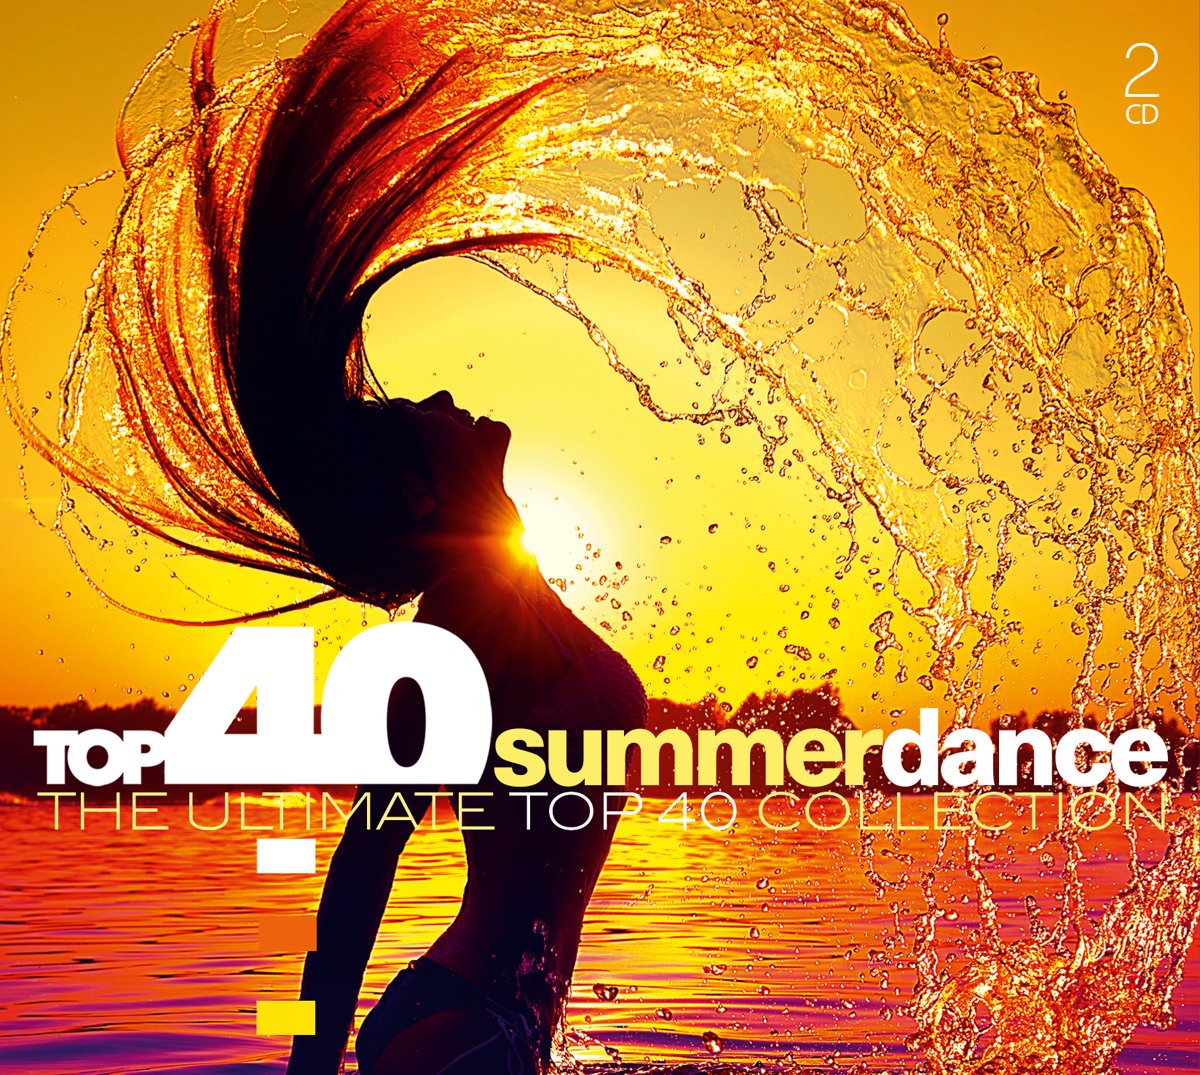 Summer Dance. Summer dance remix